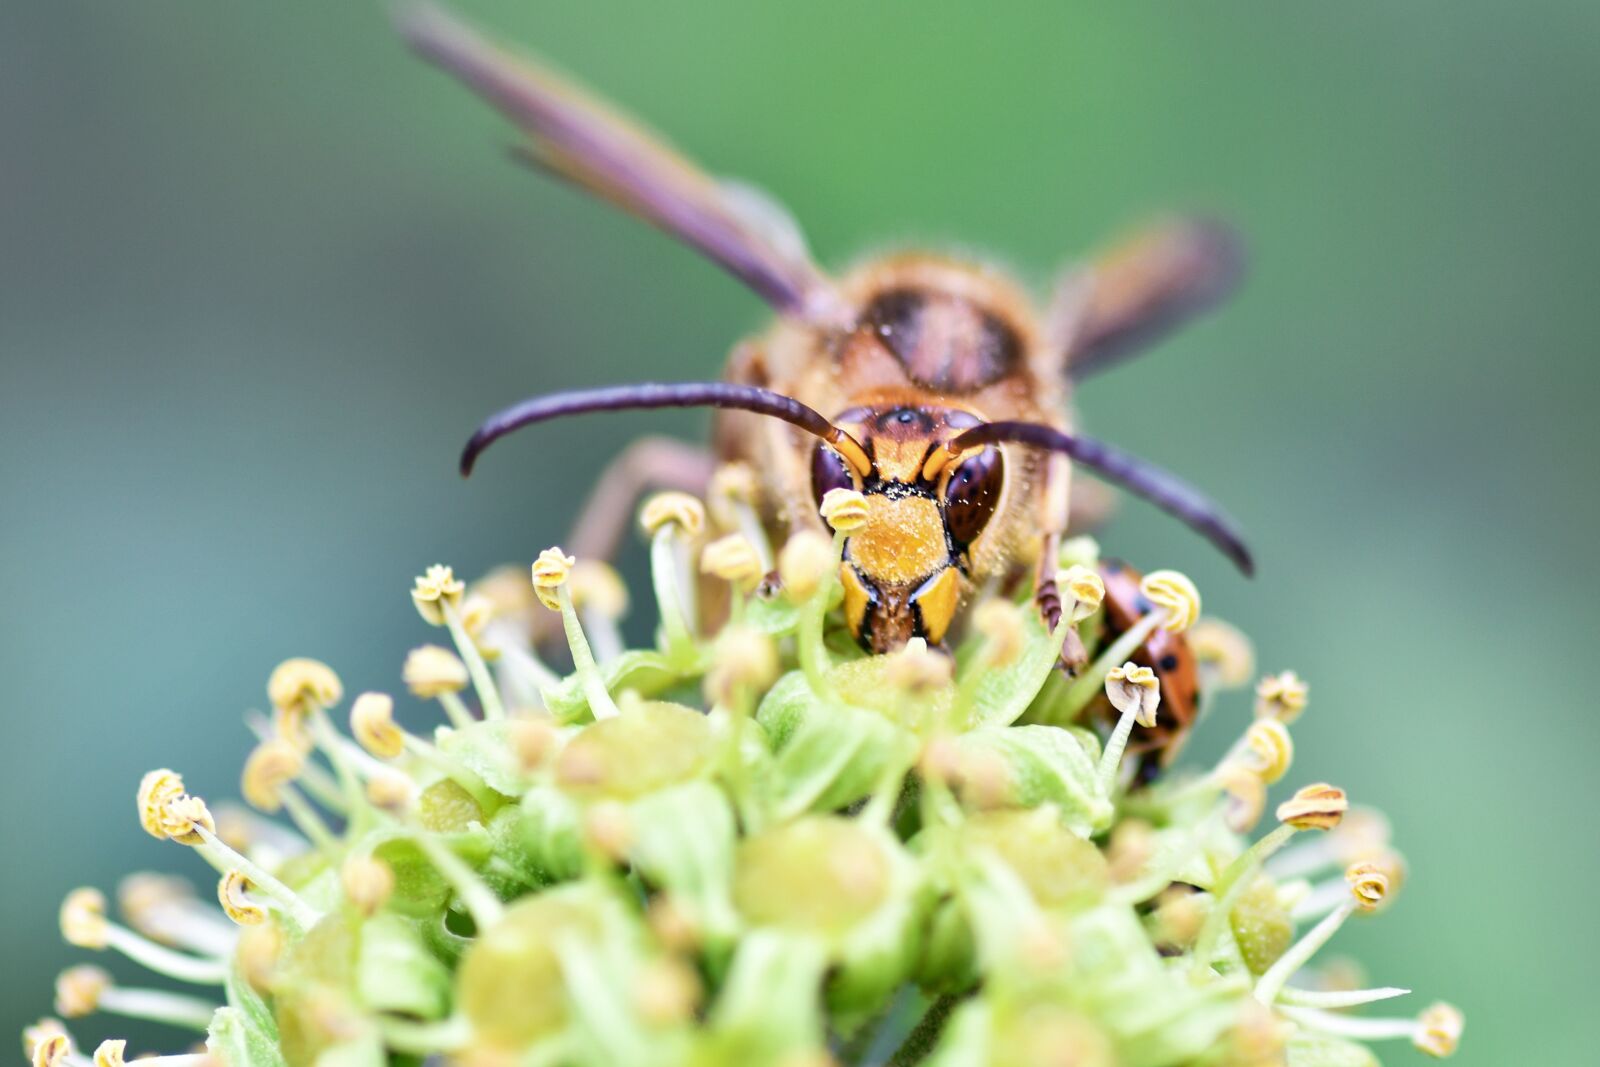 Nikon D500 + Tokina AT-X Pro 100mm F2.8 Macro sample photo. Wasp, insect, forage photography